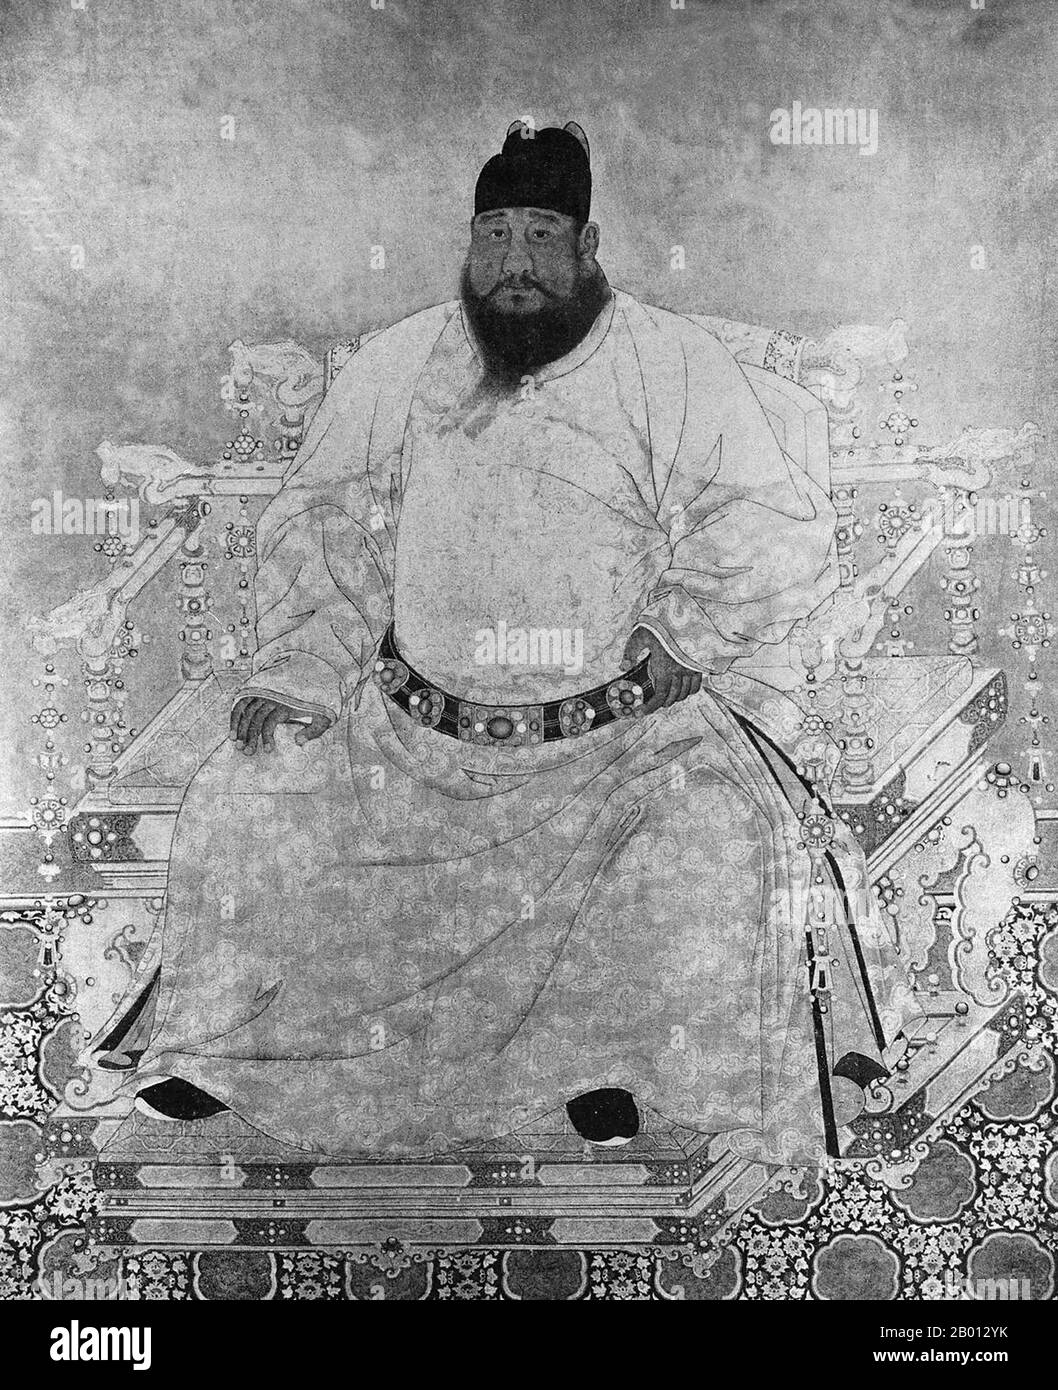 China: Kaiser Xuande, 5. Herrscher der Ming-Dynastie (r. 1425-1435). Hängende Schriftrolle, 15.-17. Jahrhundert. Der Kaiser Xuande (1399-1435), persönlicher Name Zhu Zhani und Tempelname Xuanzong, war der 5. Kaiser von Ming China. Sein Zeitname bedeutet "Verkündigung der Tugend". Der Kaiser von Xuande regierte über eine bemerkenswert friedliche Zeit ohne nennenswerte äußere oder innere Probleme. Spätere Historiker betrachten seine Herrschaft als das goldene Zeitalter der Ming-Dynastie. Stockfoto